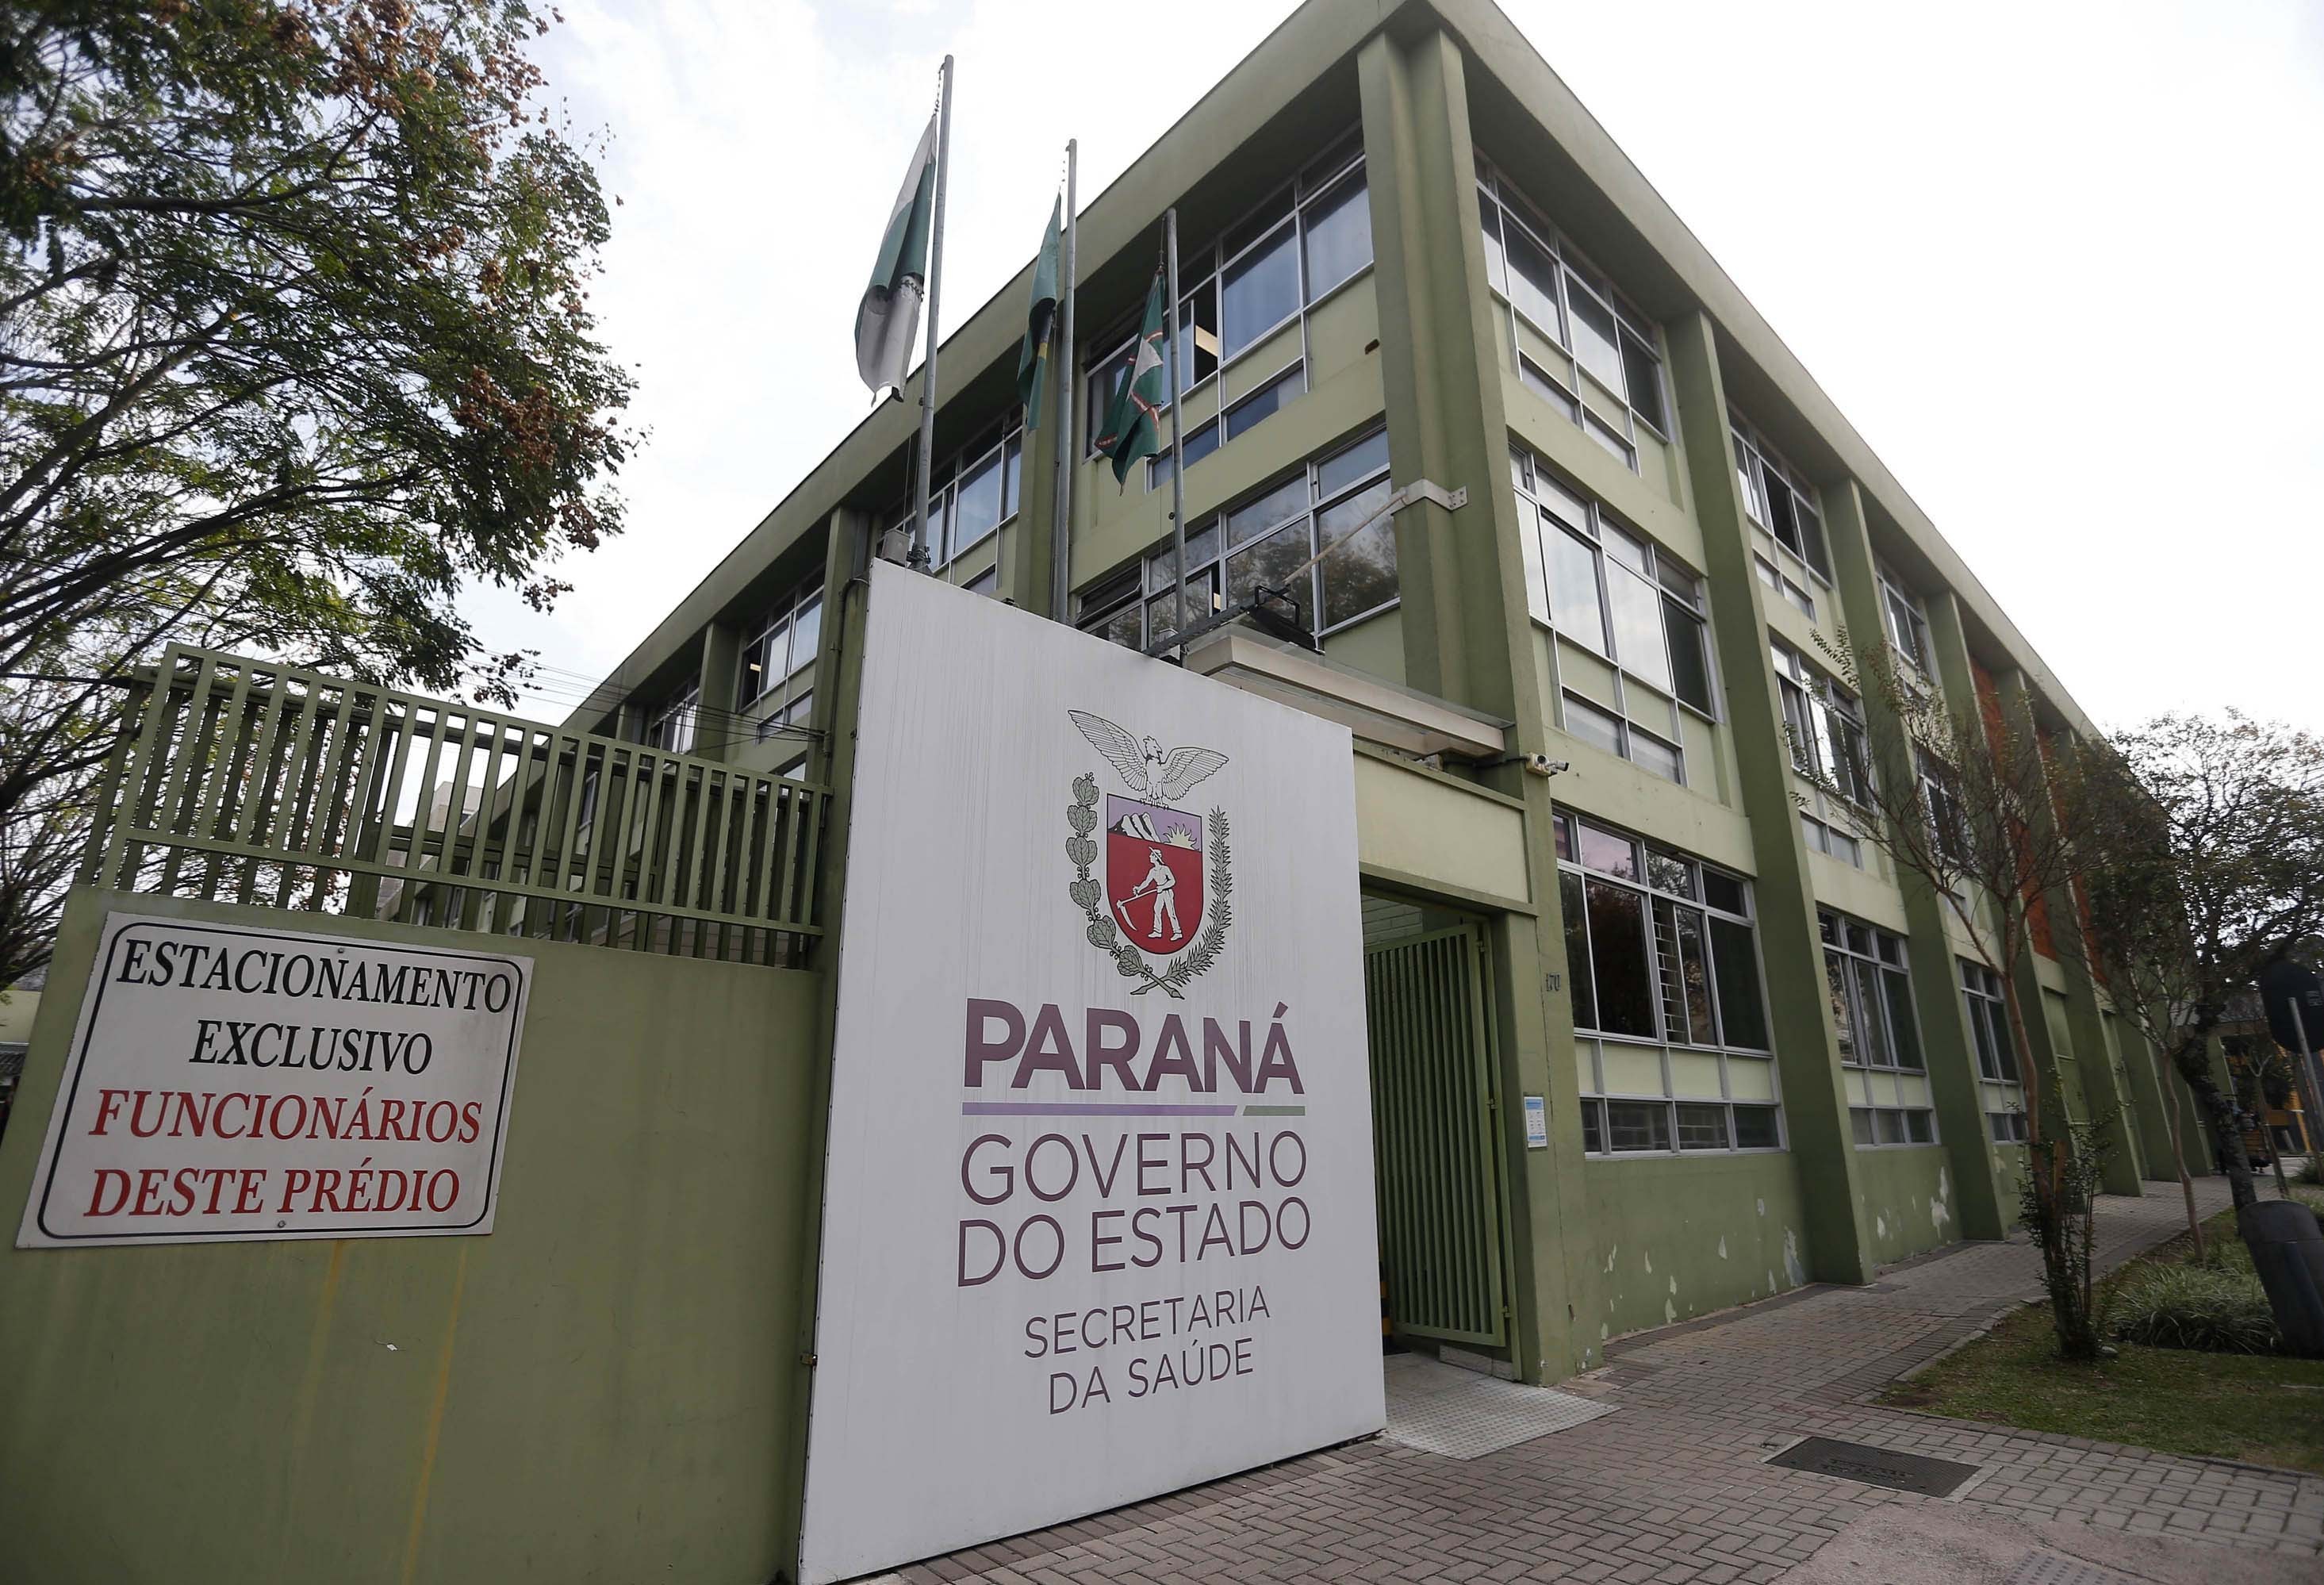 66% dos moradores da região Oeste aprovam gestão da saúde do Paraná